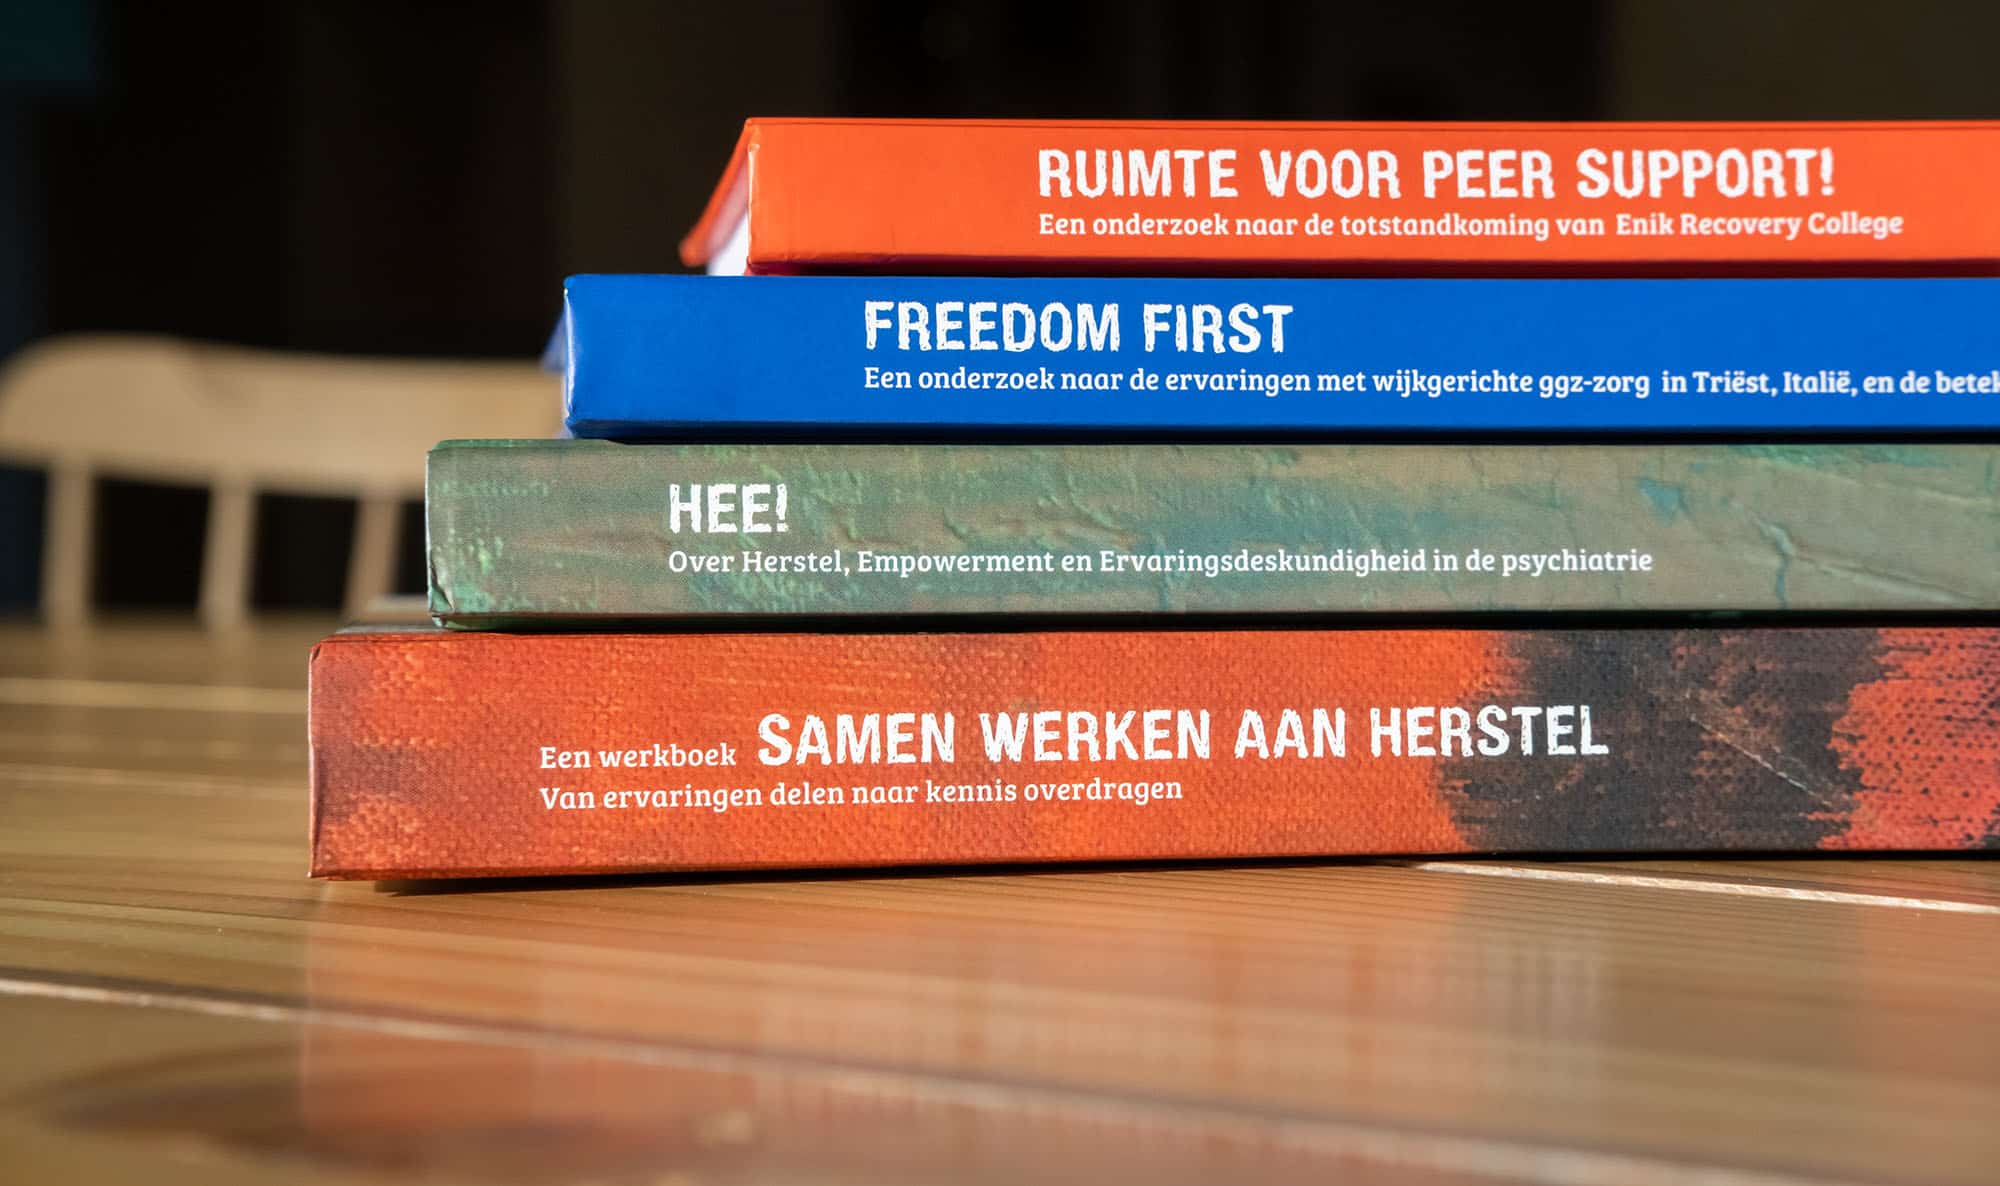 Er liggen vier boeken met de titels: Samen werken aan herstel, Hee!, Freedom first en Ruimte voor peer support.